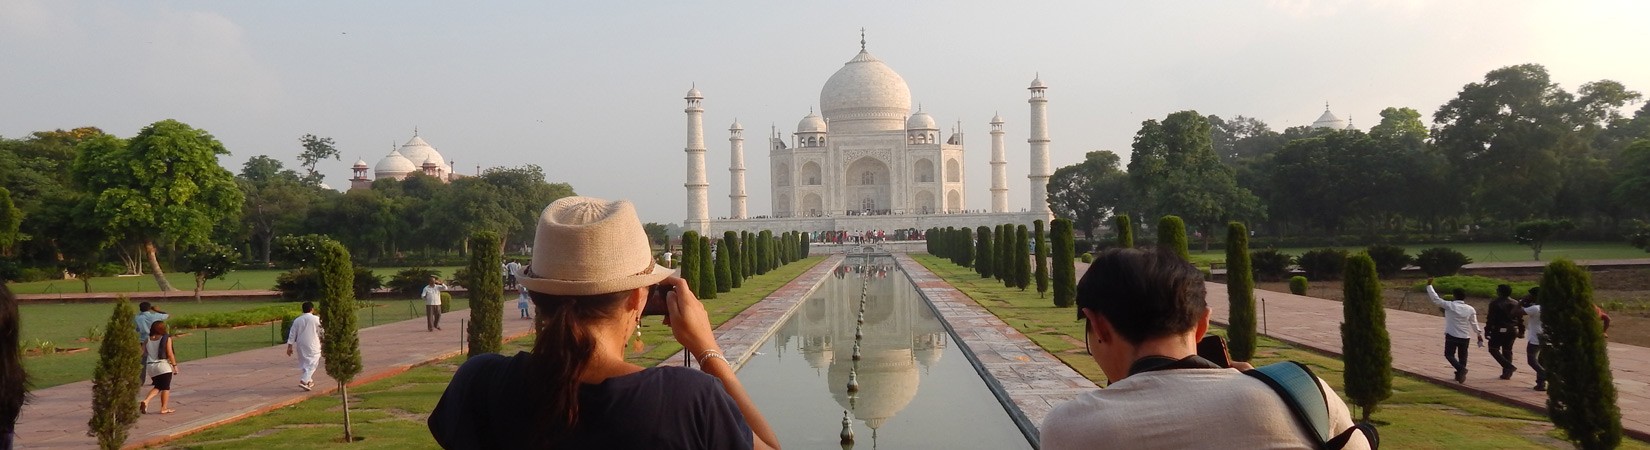 Taj Mahal. Agar, India